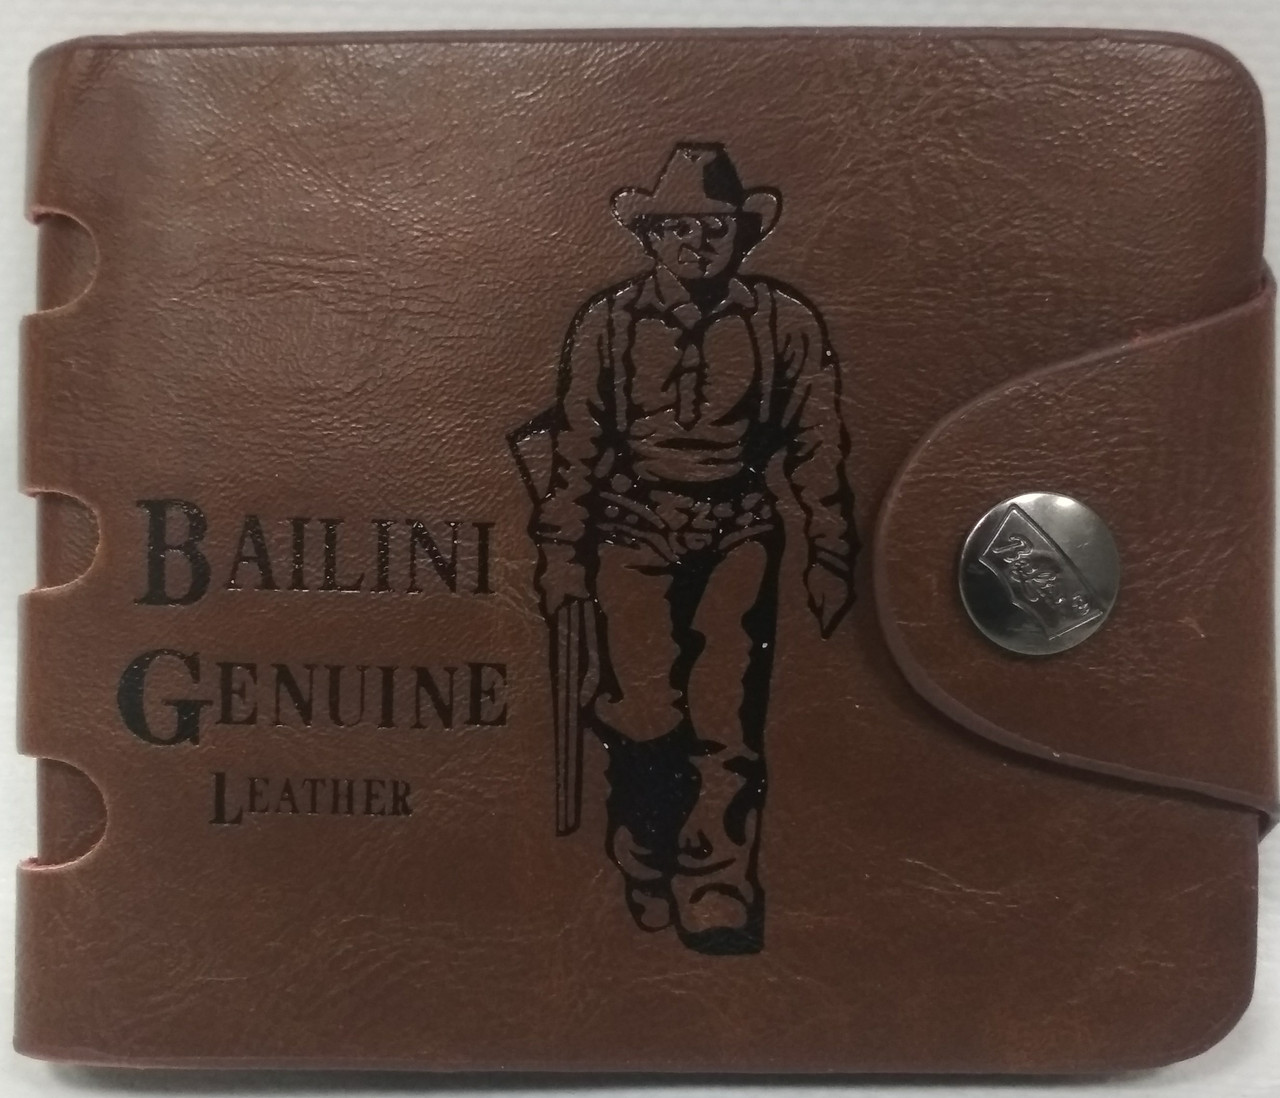 Портмоне Bailini Genuine Leather (Кошелек Байлини)